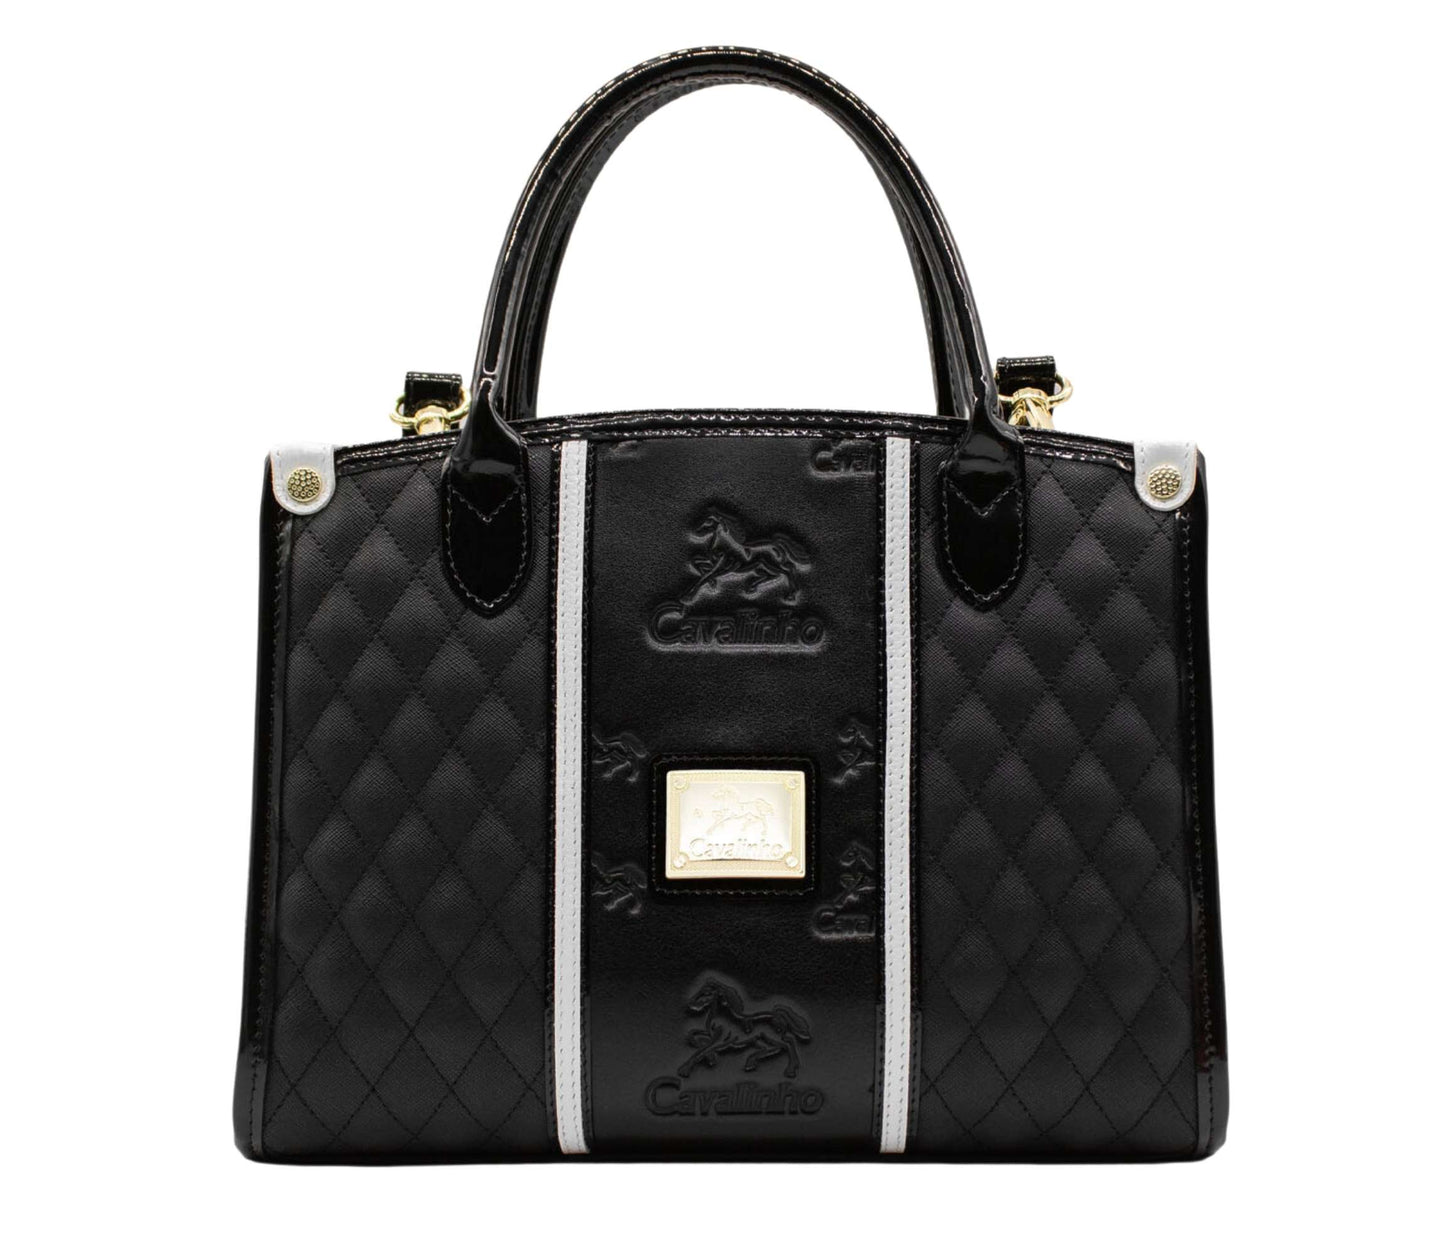 #color_ Black and White | Cavalinho Royal Handbag - Black and White - 18390480.21.99